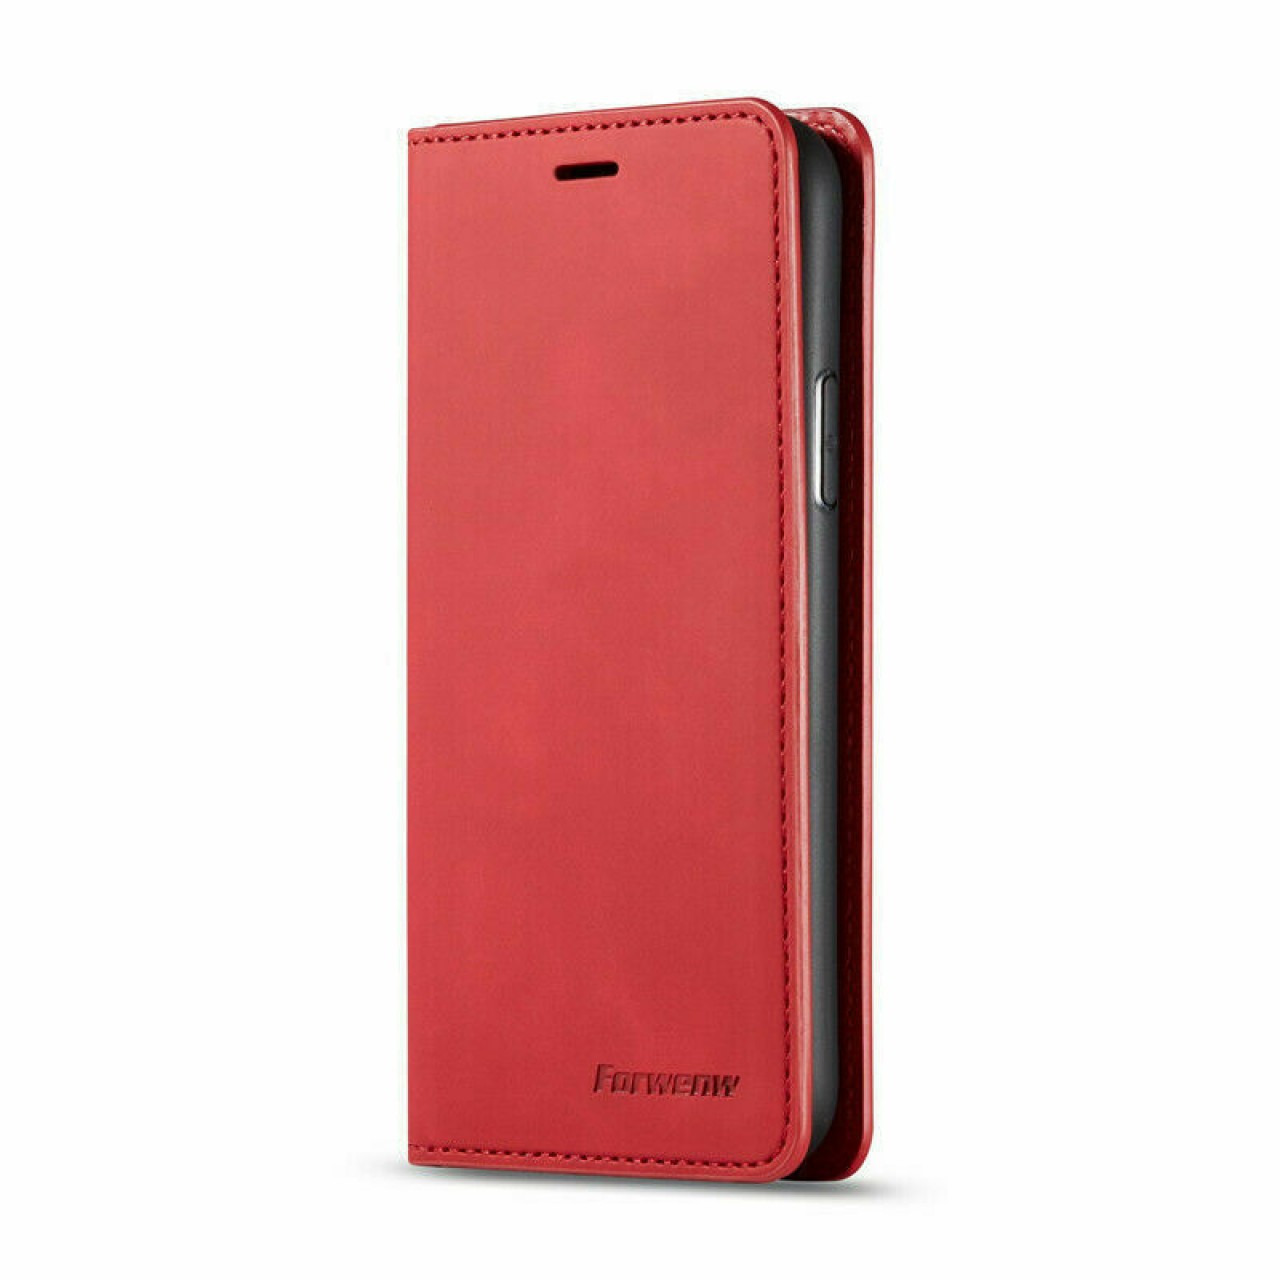 Samsung Galaxy Note 9 Θήκη Κινητού Μαγνητική - Mobile Case Leather Book Forwenw Red